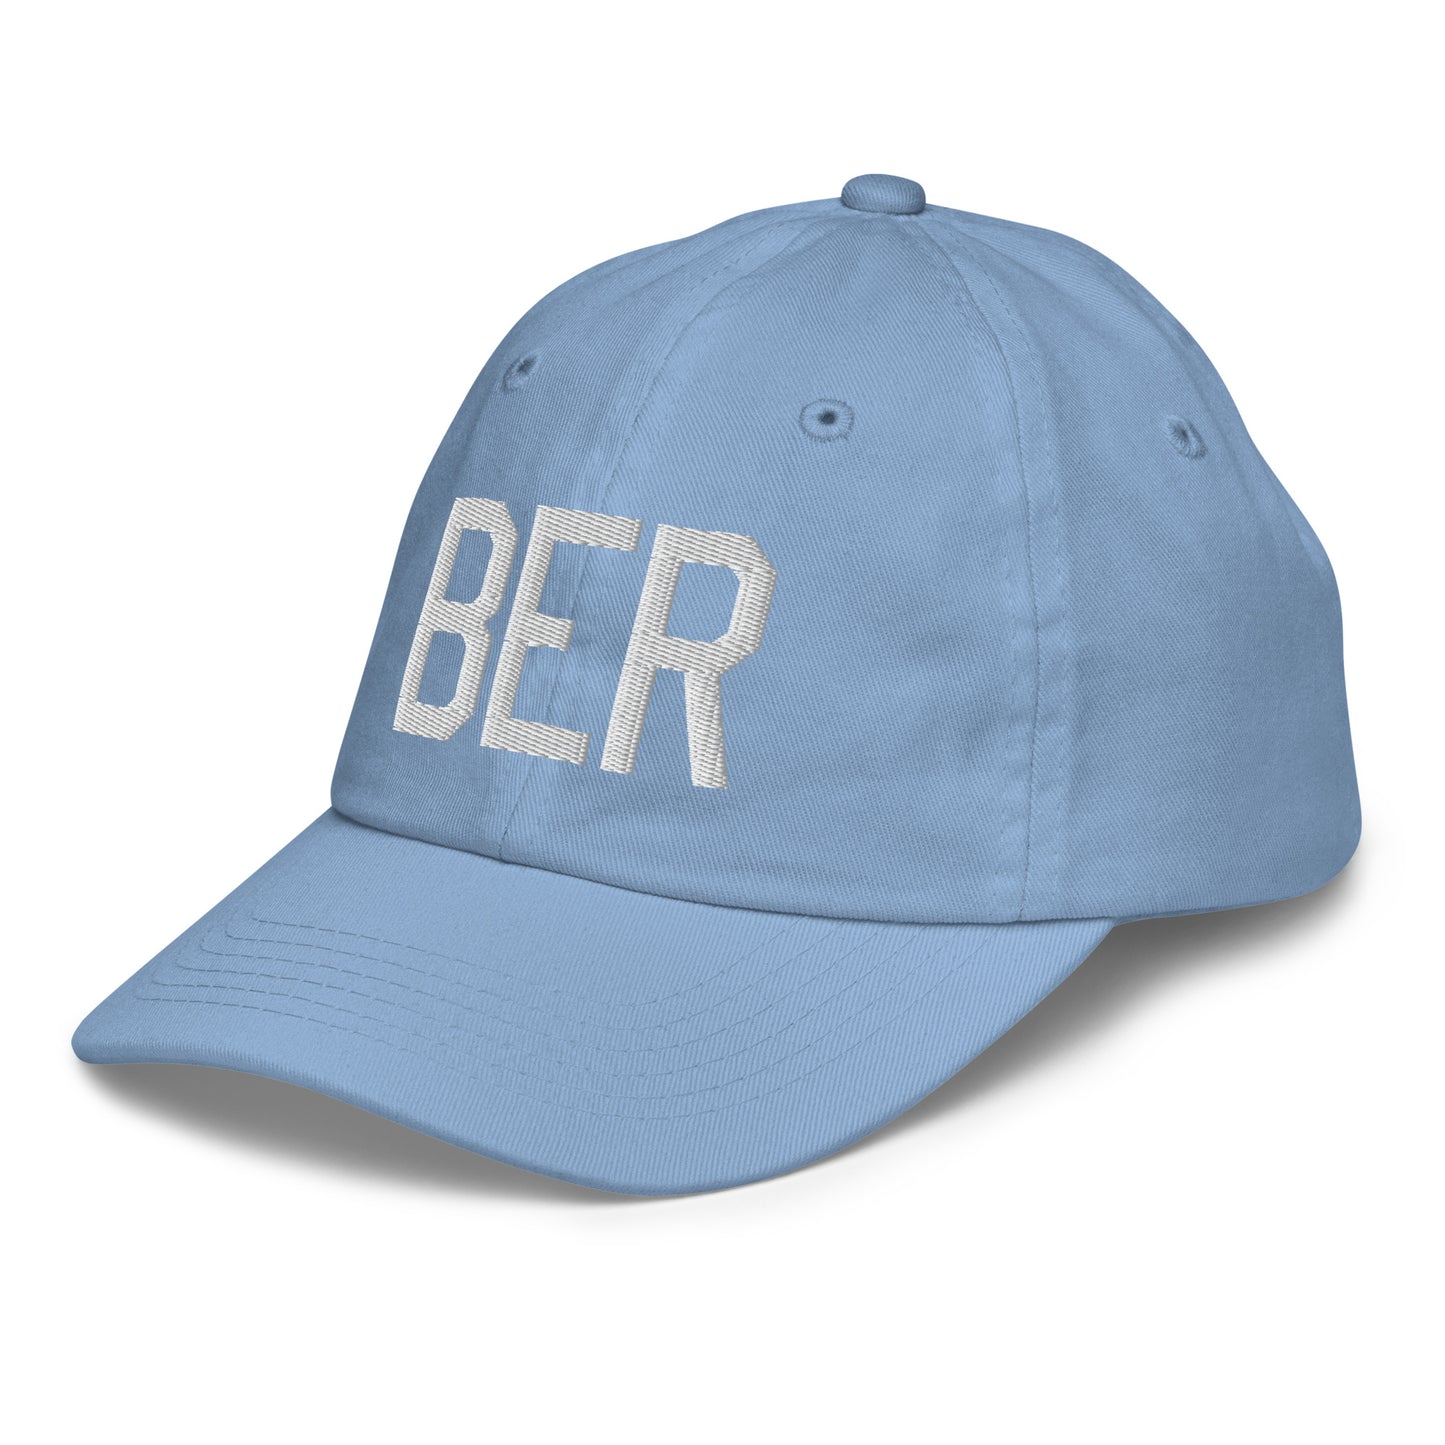 Airport Code Kid's Baseball Cap - White • BER Berlin • YHM Designs - Image 24